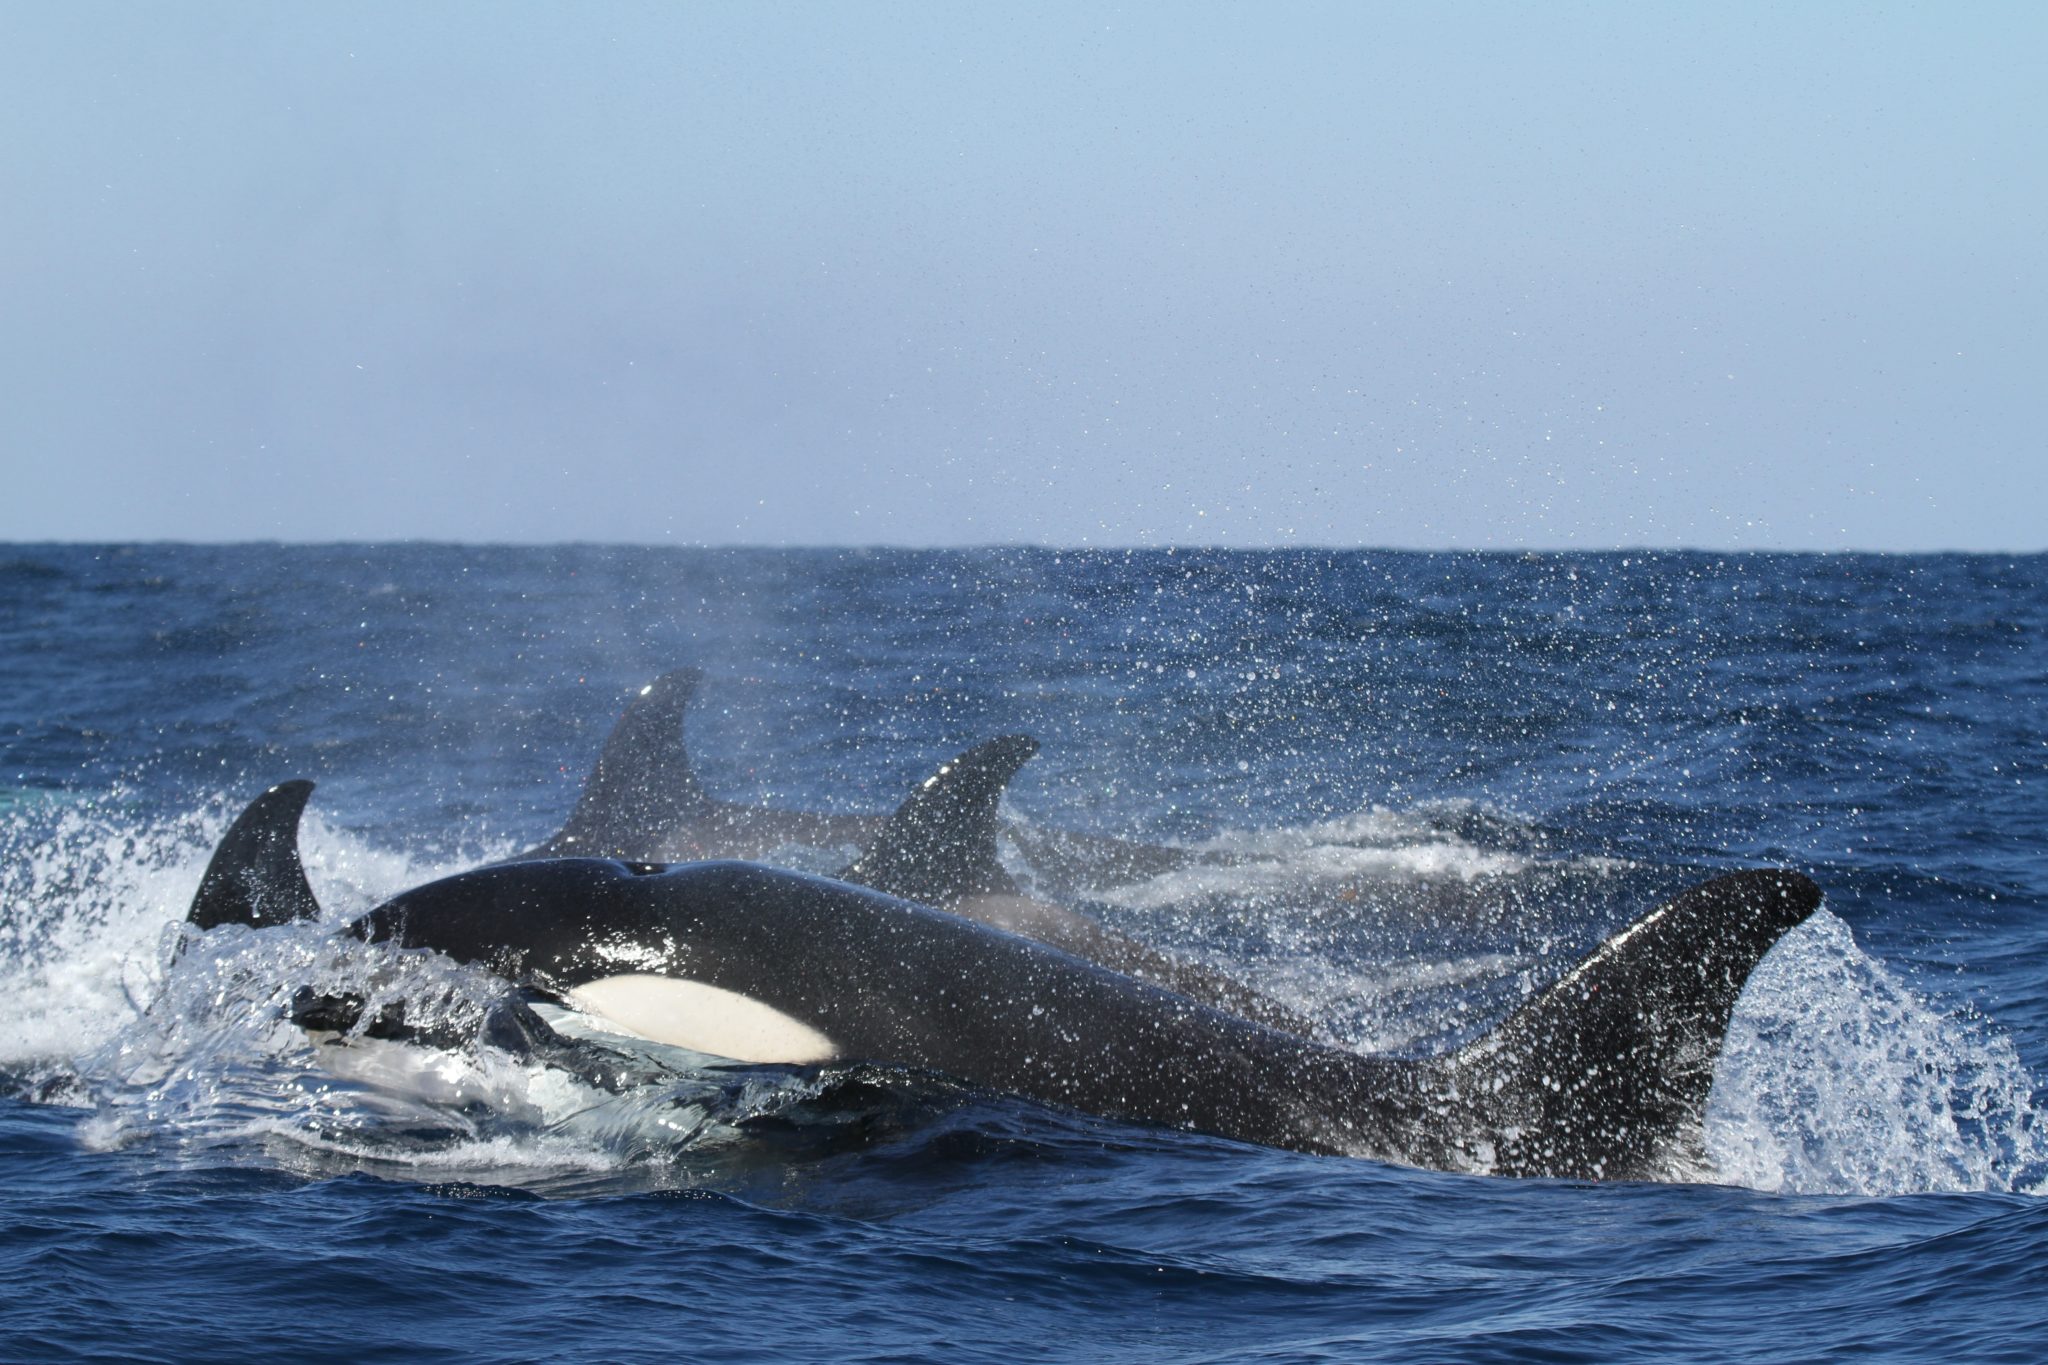 Eine Gruppe von vier Orcas mit einem Orca im Vordergrund schwimmt im blauen Meer an der Wasseroberfläche